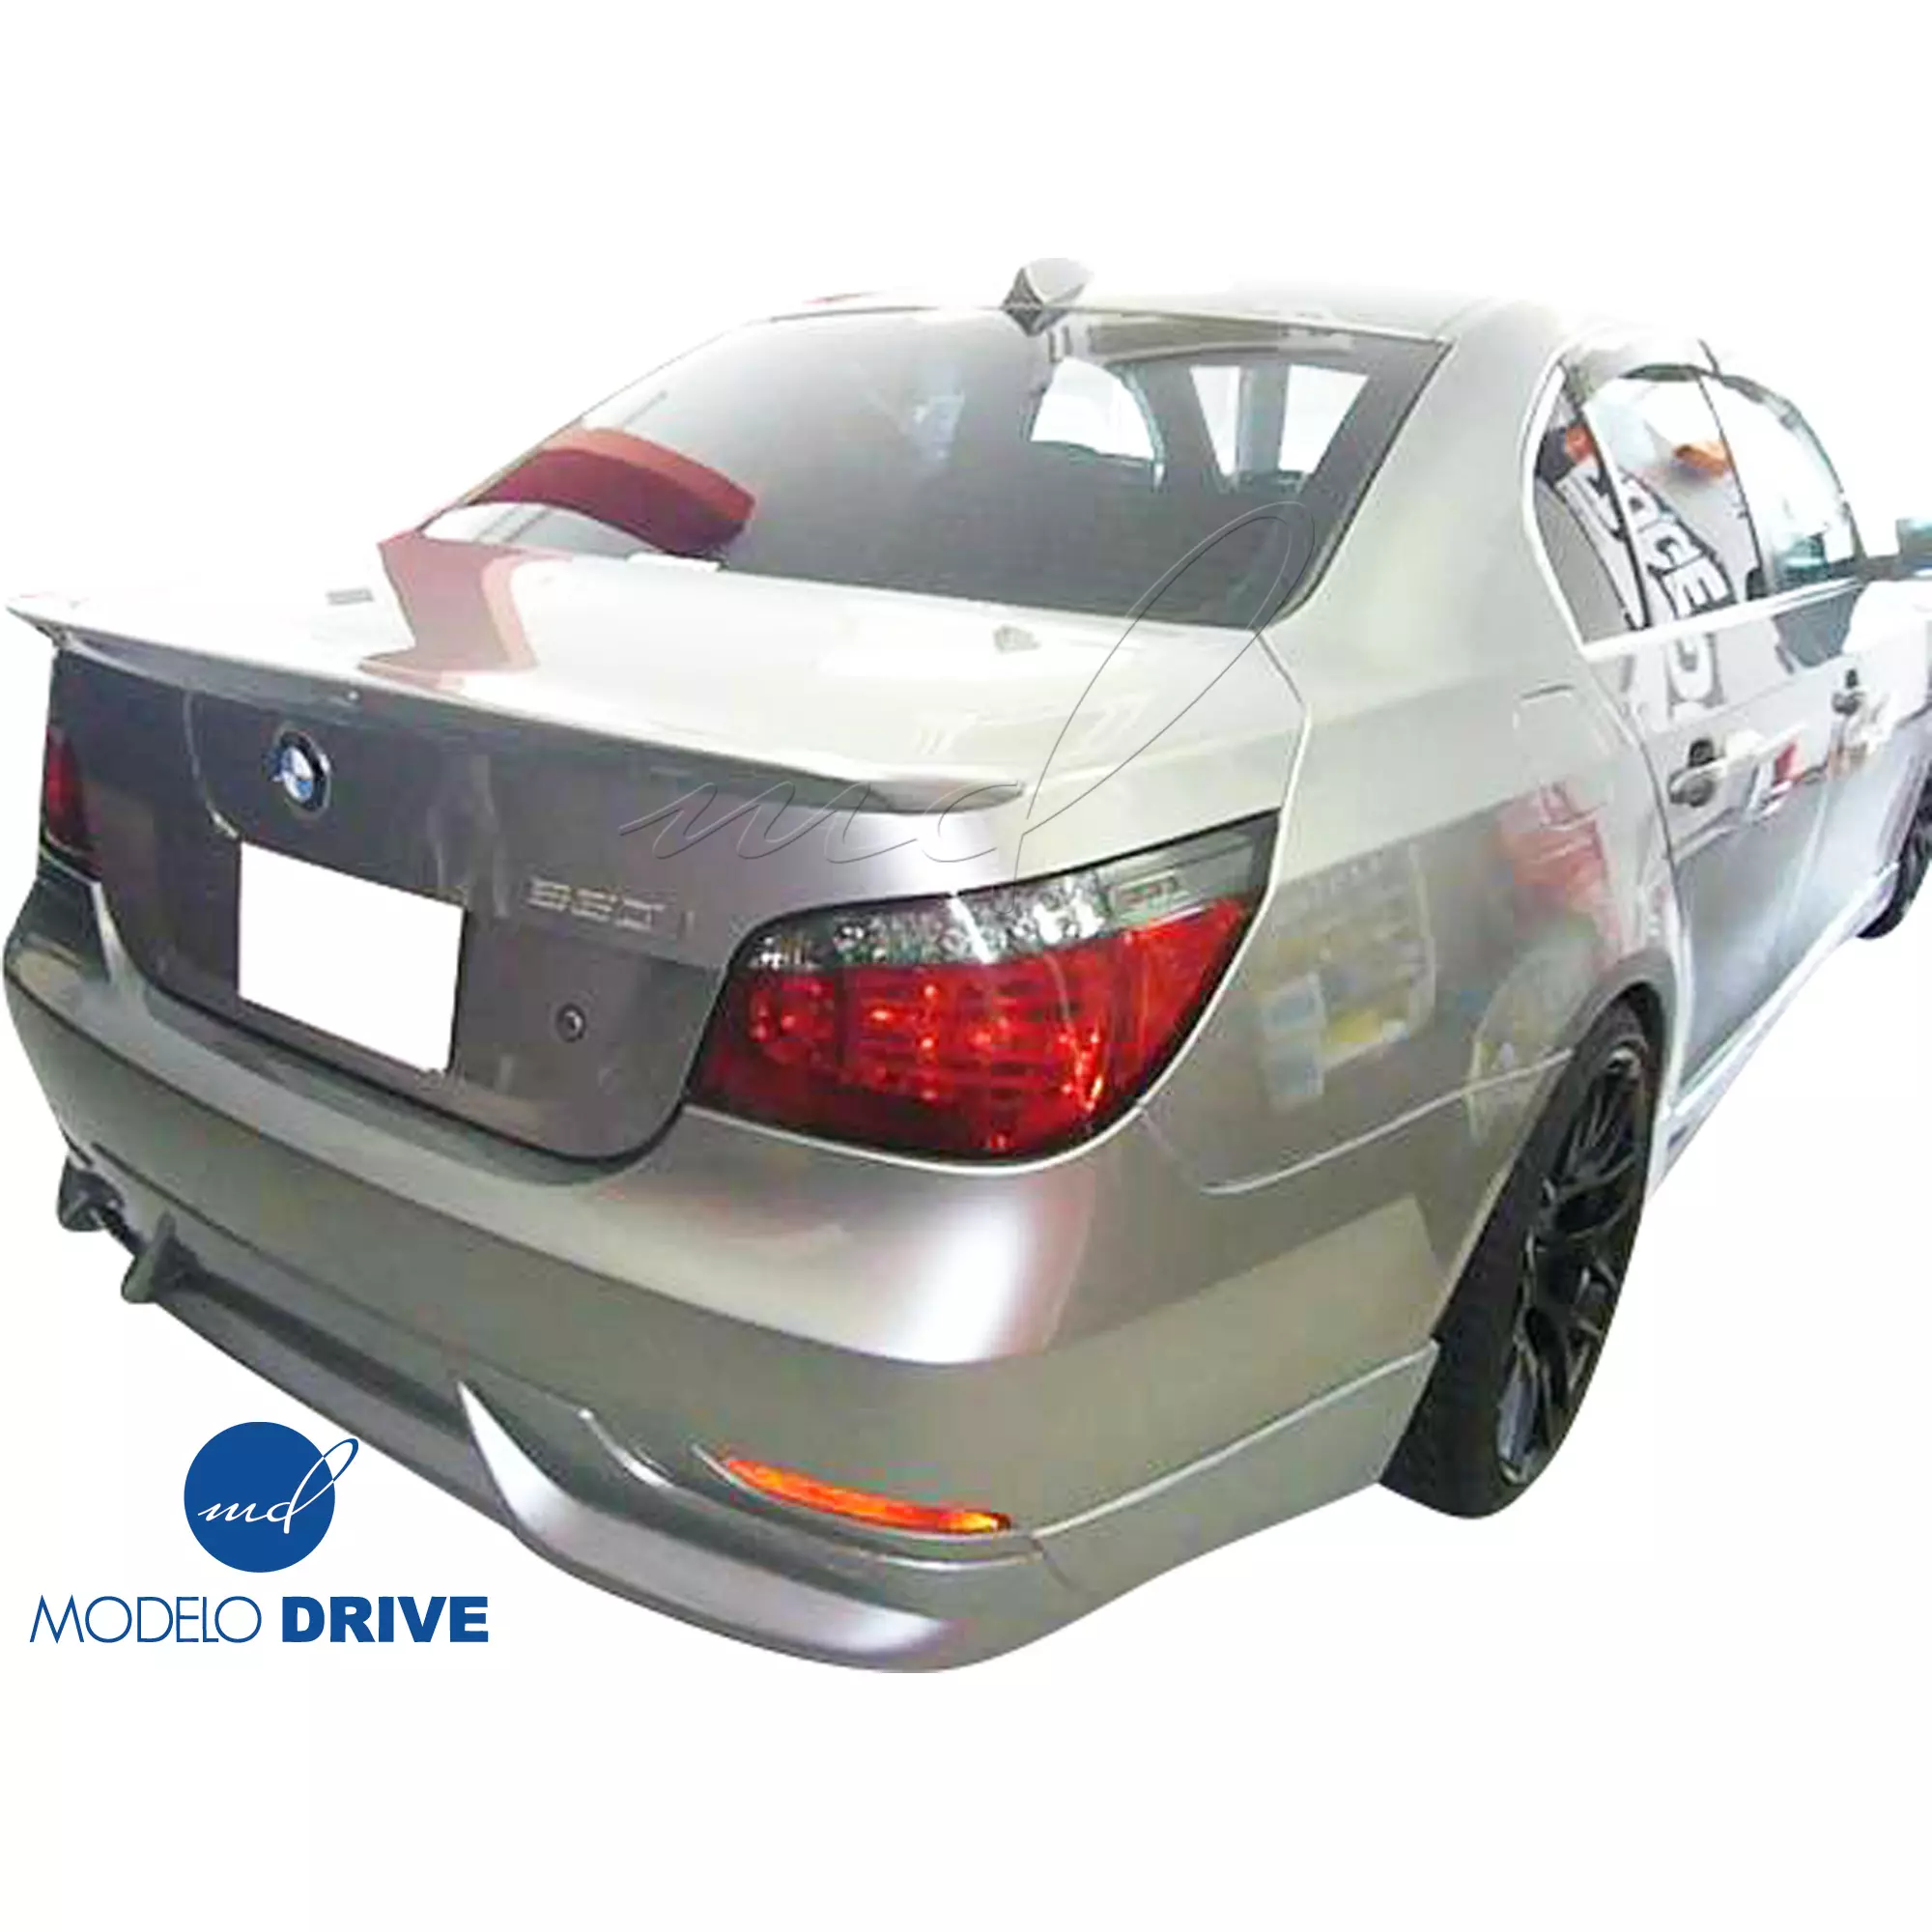 ModeloDrive FRP ASCH Body Kit 4pc > BMW 5-Series E60 2004-2010 > 4dr - Image 18